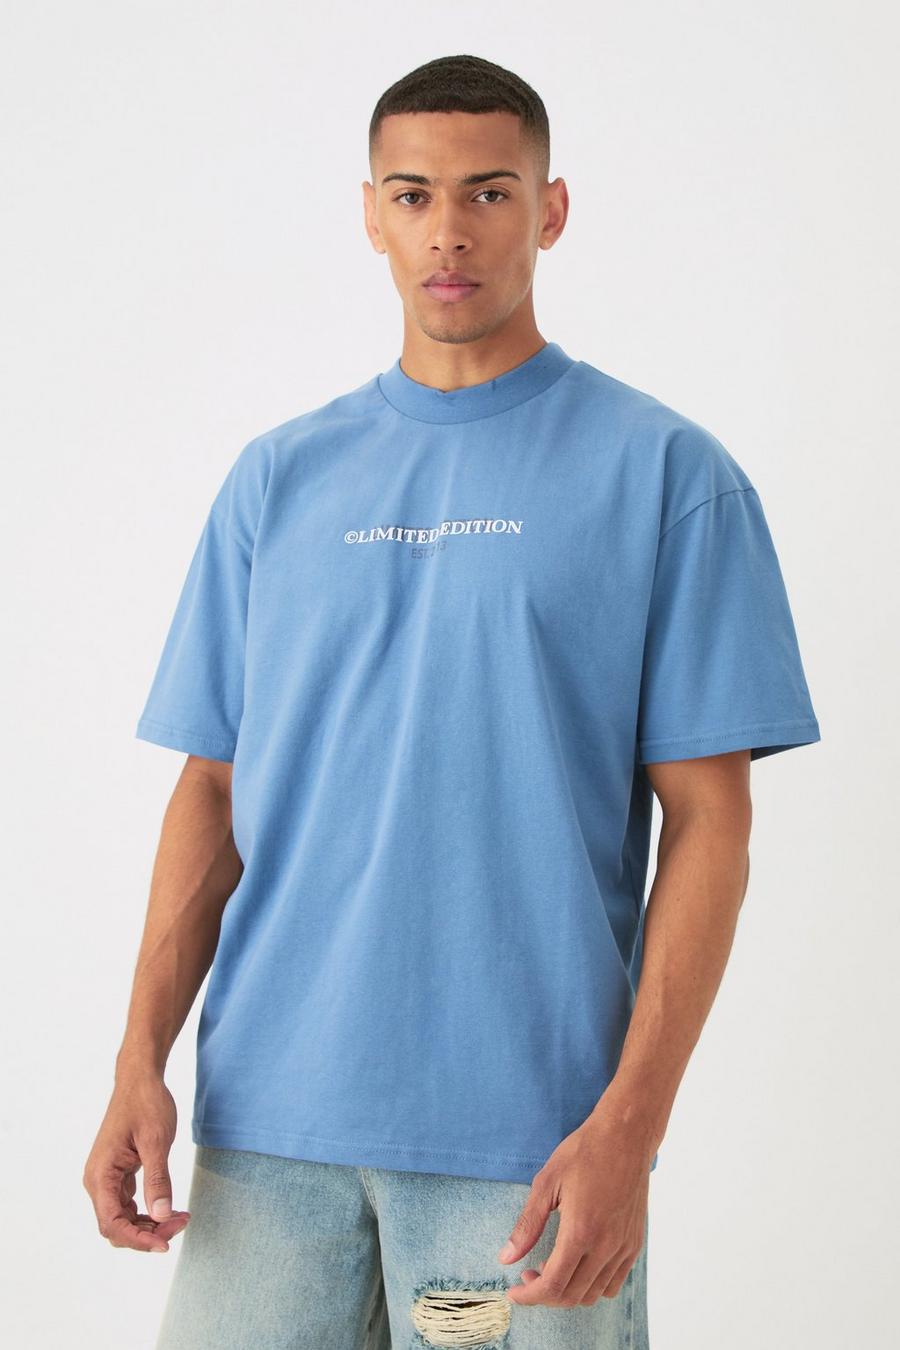 Camiseta oversize Limited gruesa, Dusty blue image number 1